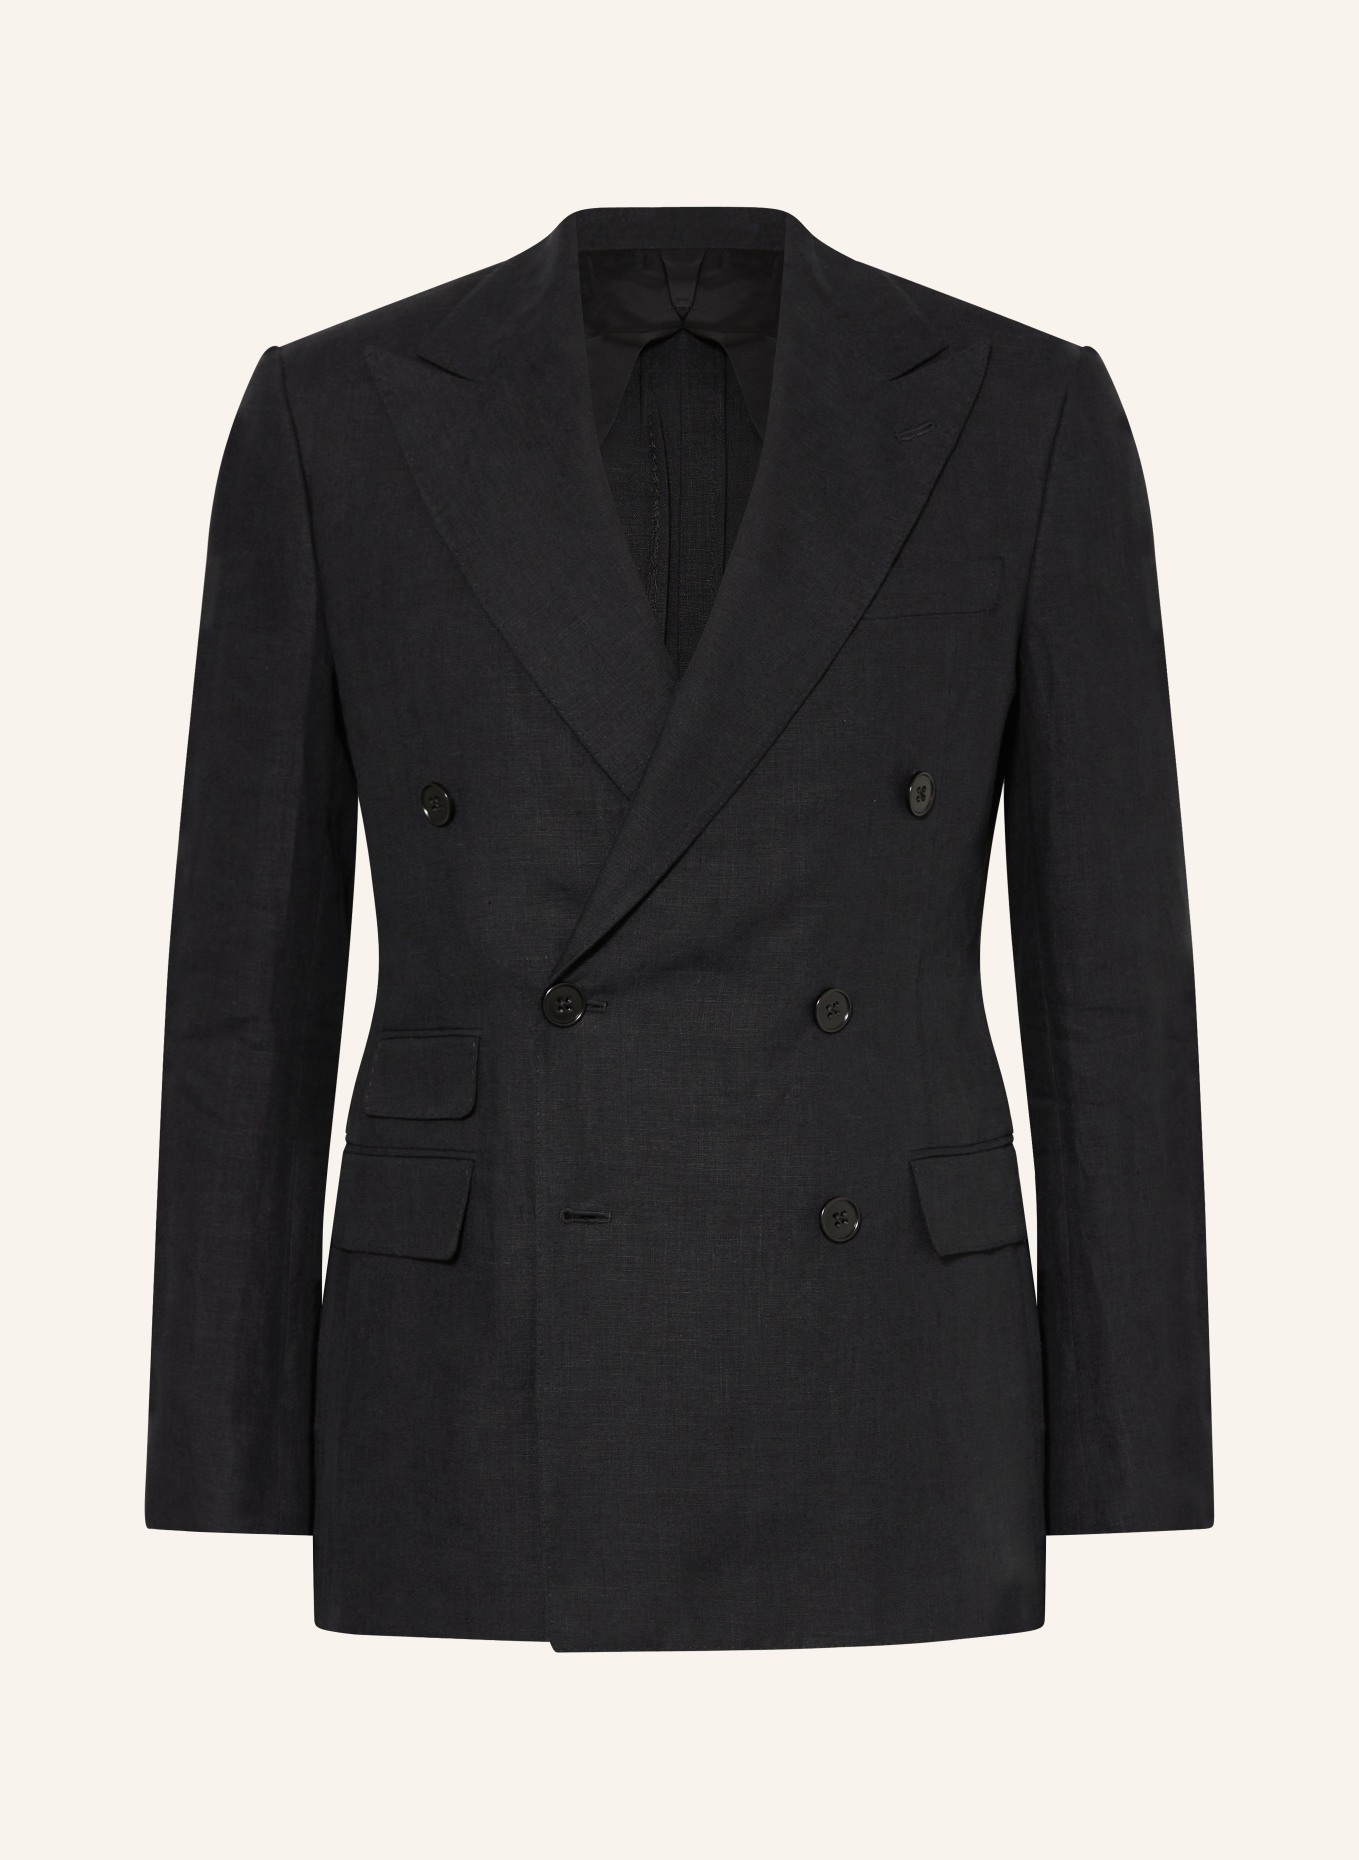 RALPH LAUREN PURPLE LABEL Linen jacket extra slim fit, Color: BLACK (Image 1)